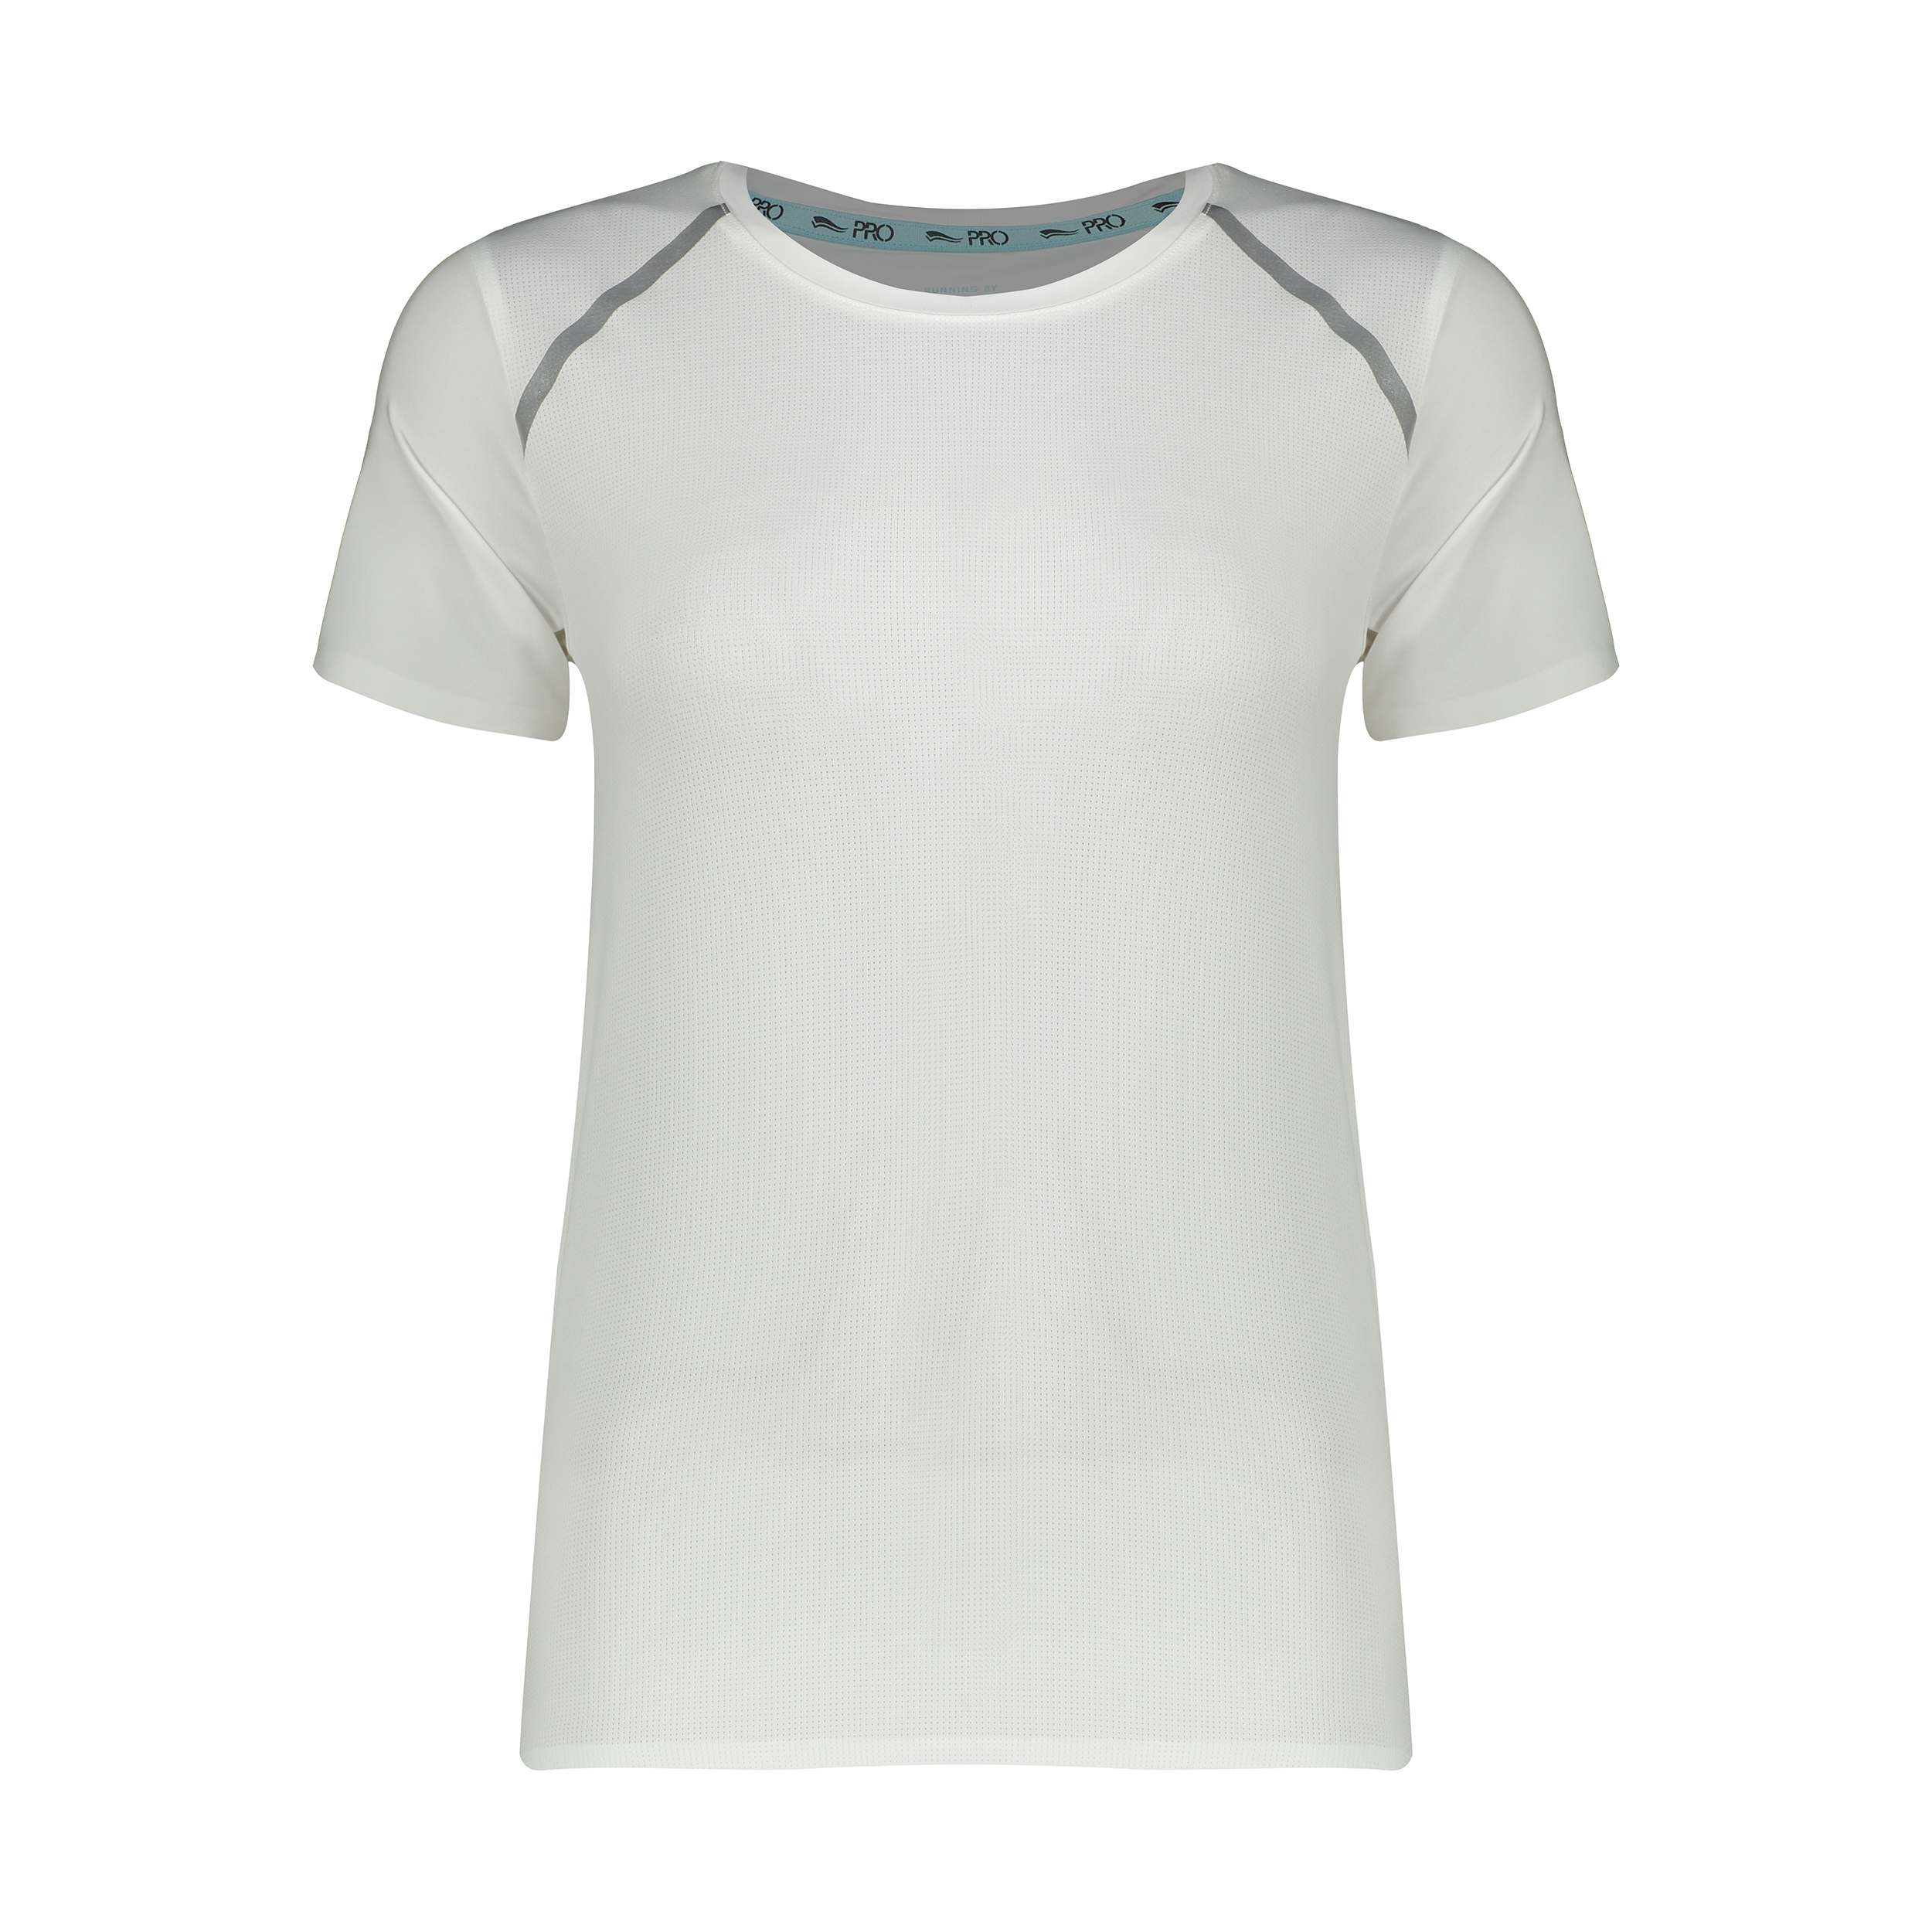 تی شرت ورزشی زنانه کد n95